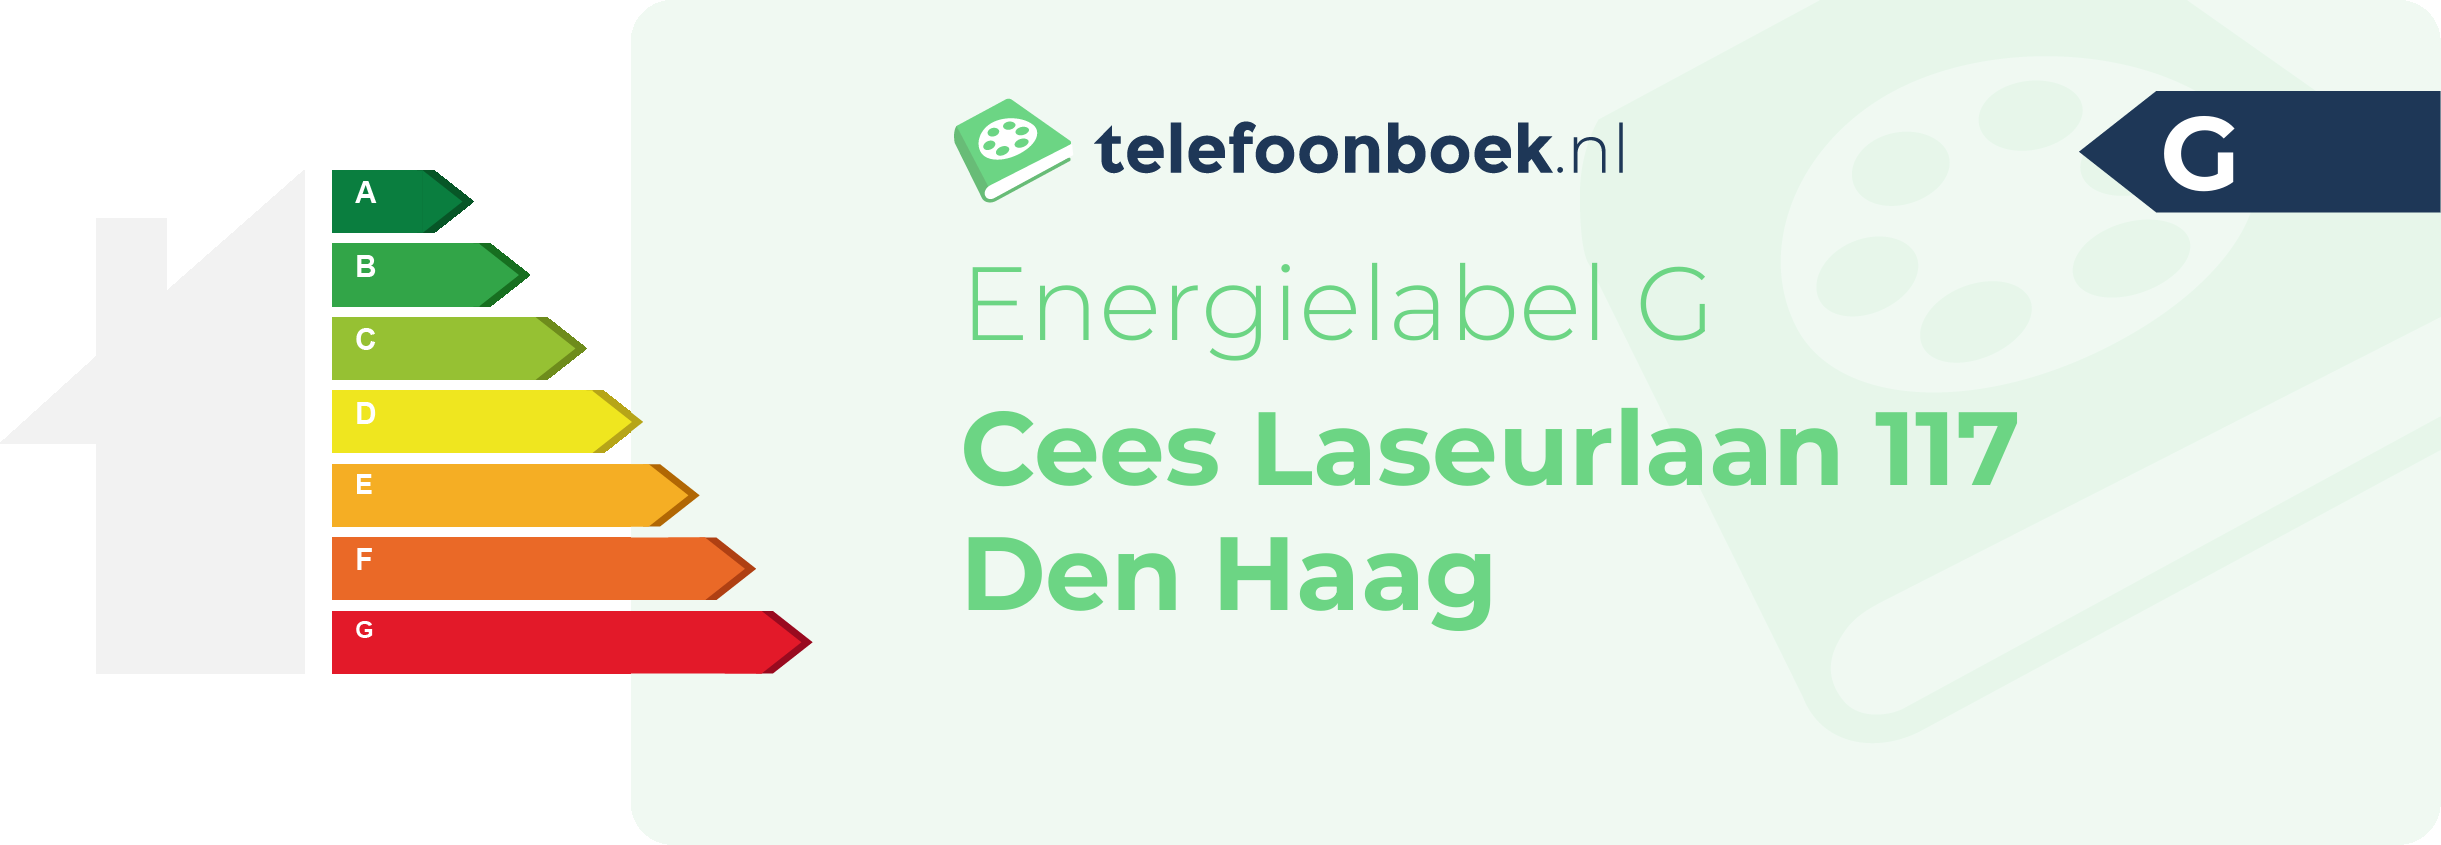 Energielabel Cees Laseurlaan 117 Den Haag